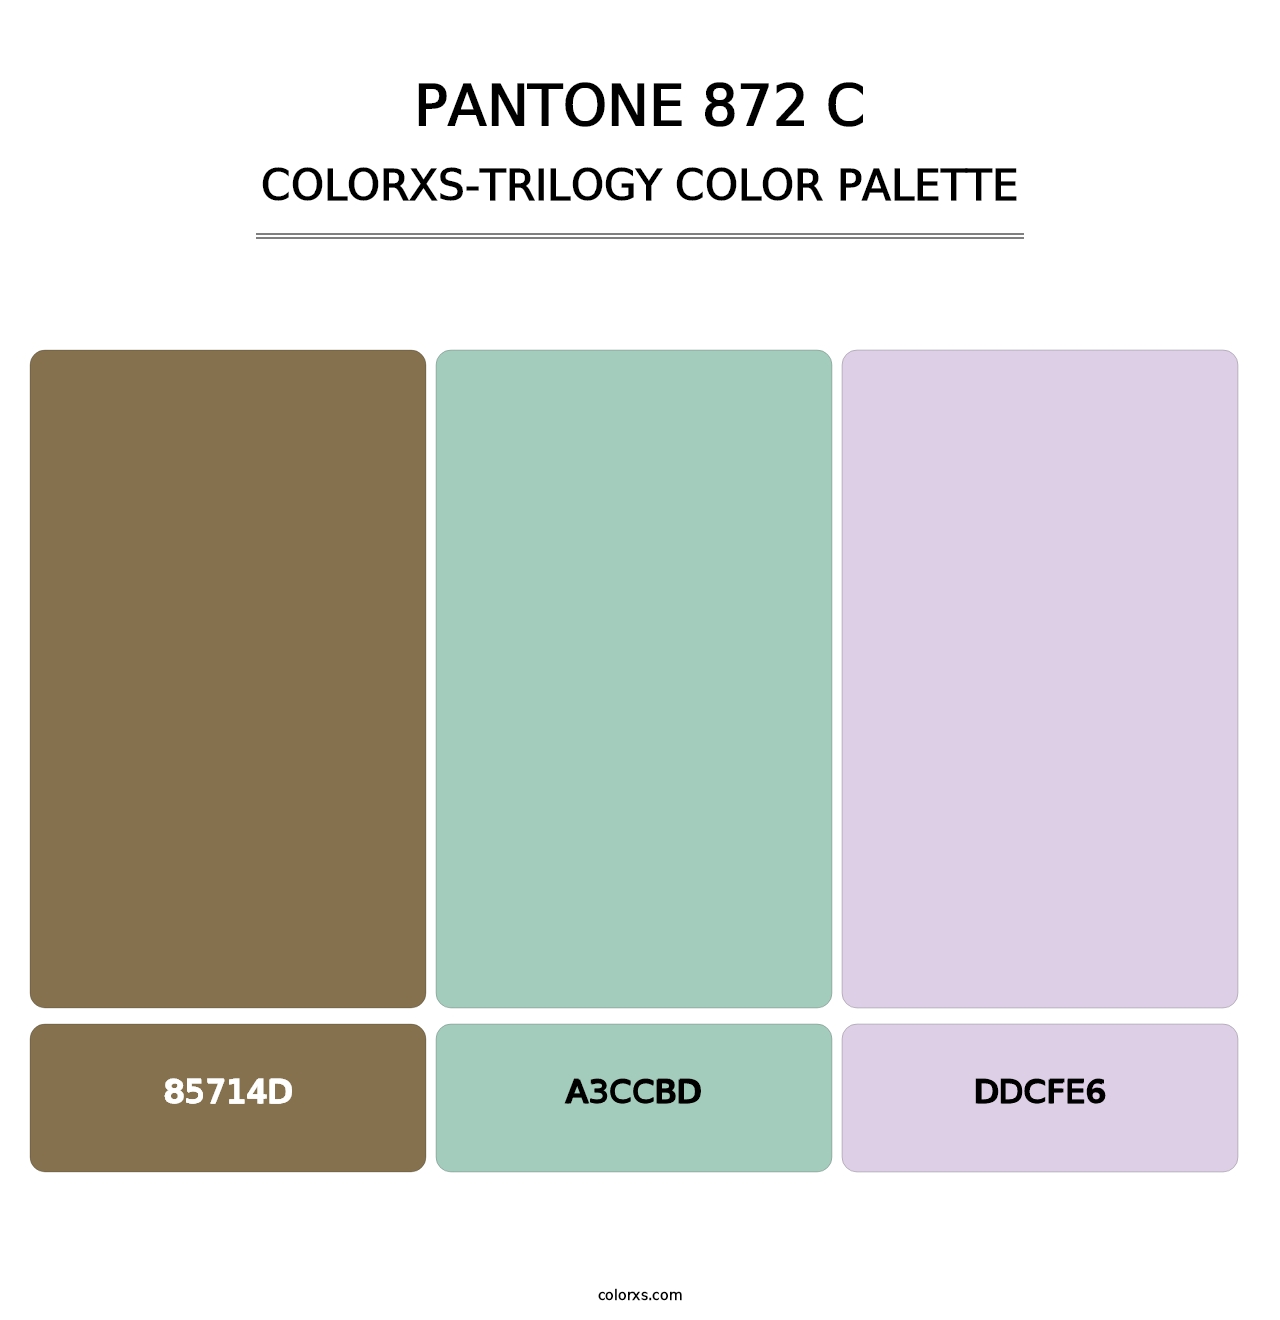 PANTONE 872 C - Colorxs Trilogy Palette